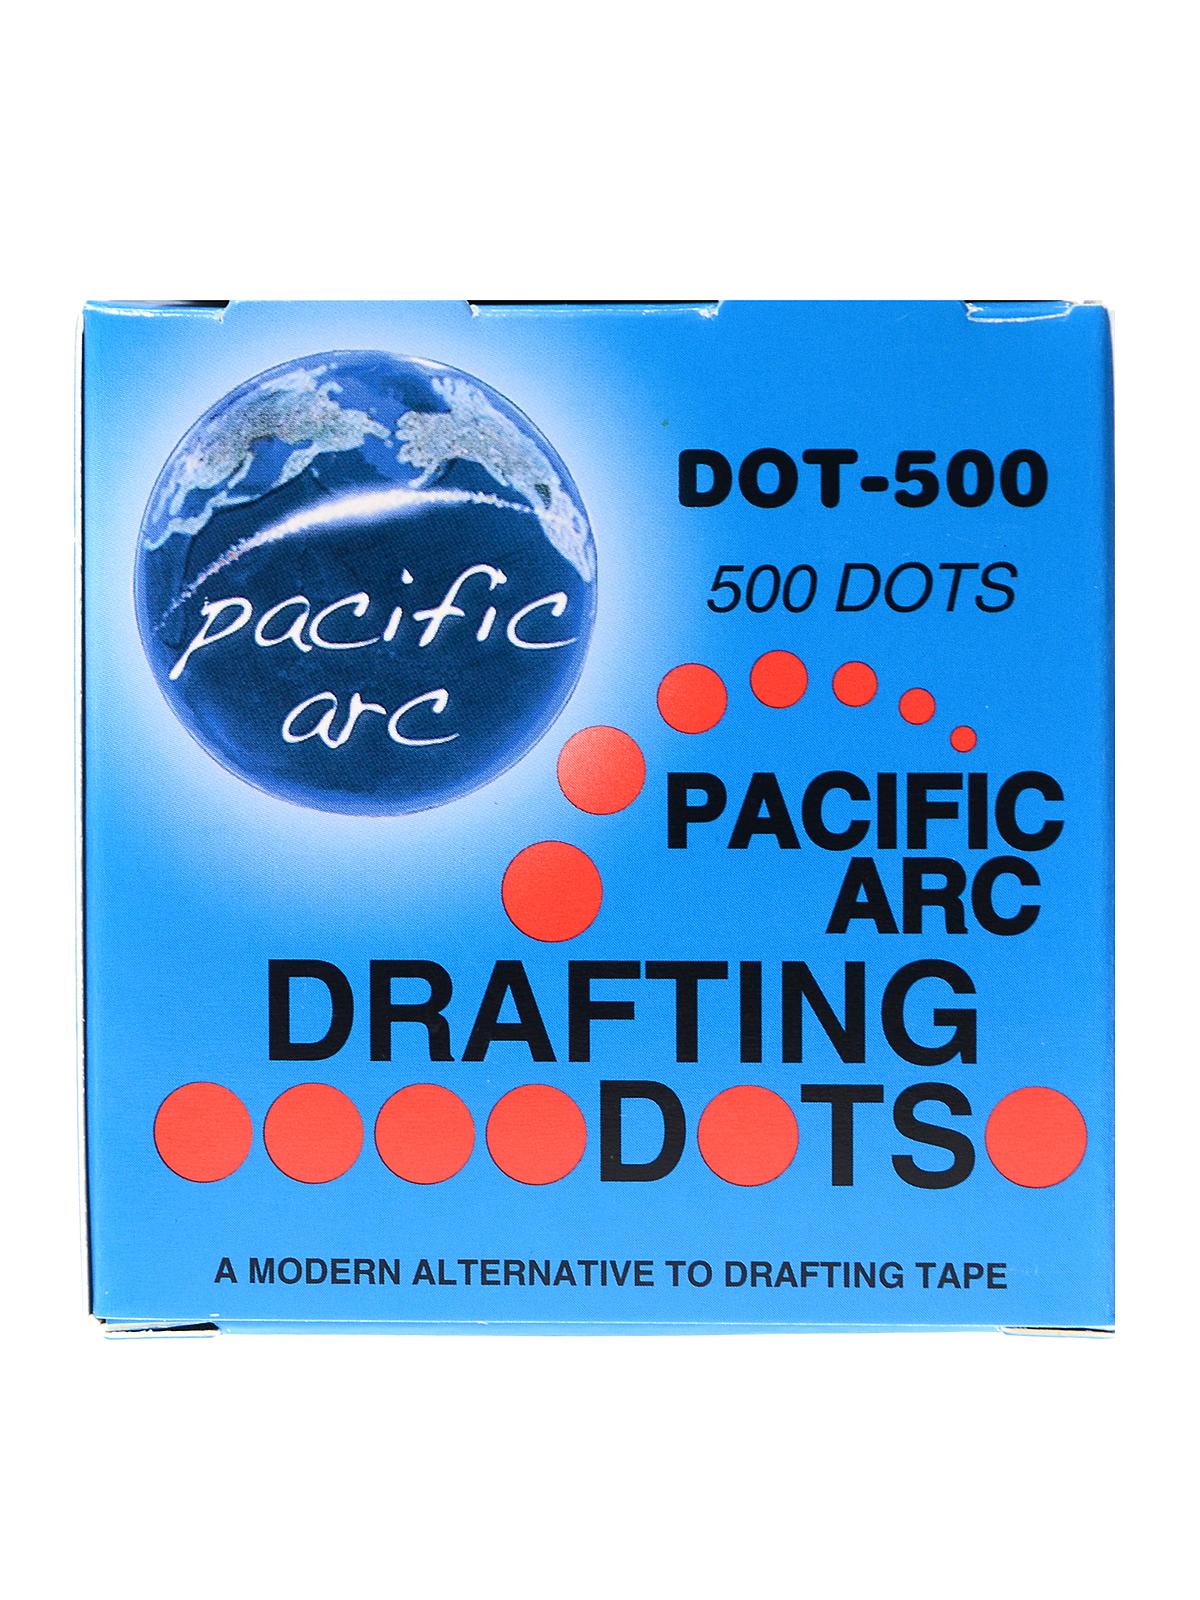 Drafting Dots Box Of 500